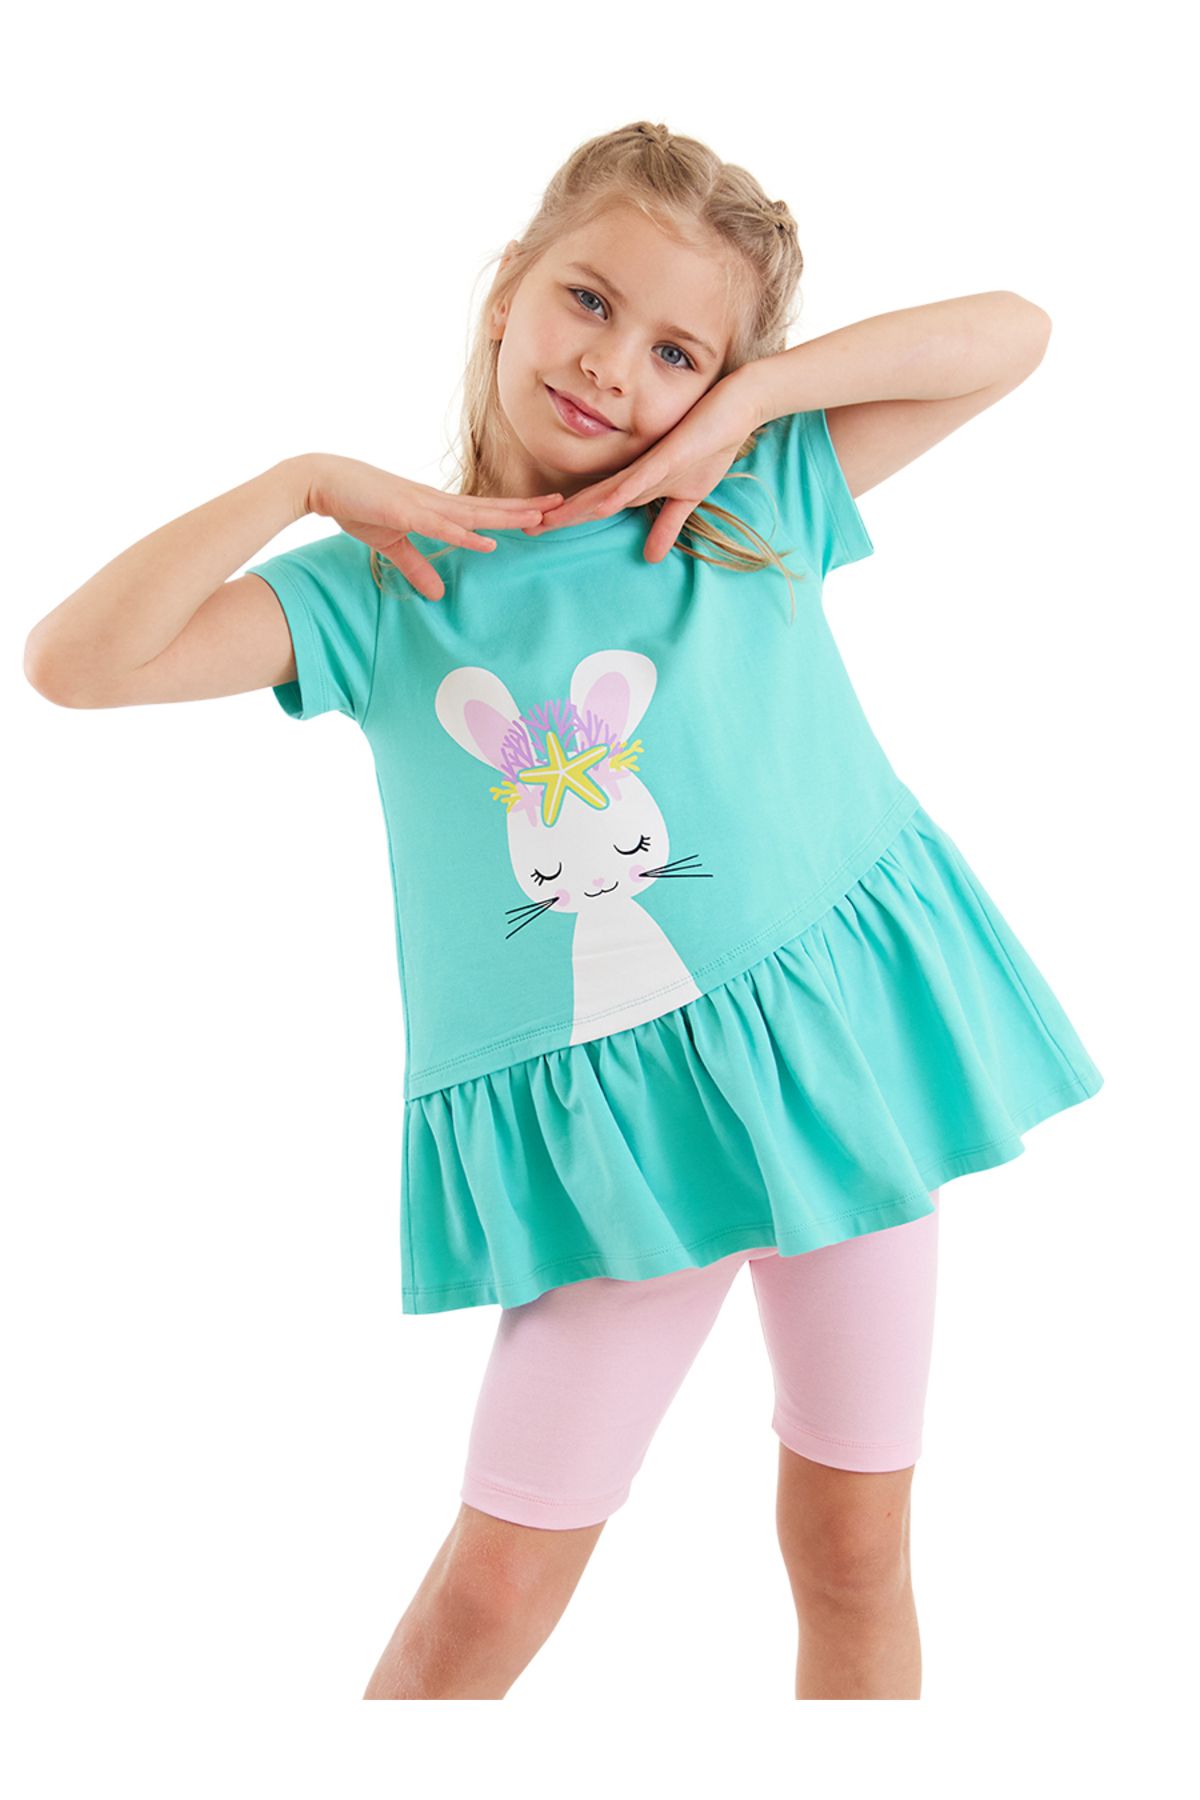 Denokids Deniz Tavşanı Kız Çocuk T-shirt Tayt Takım